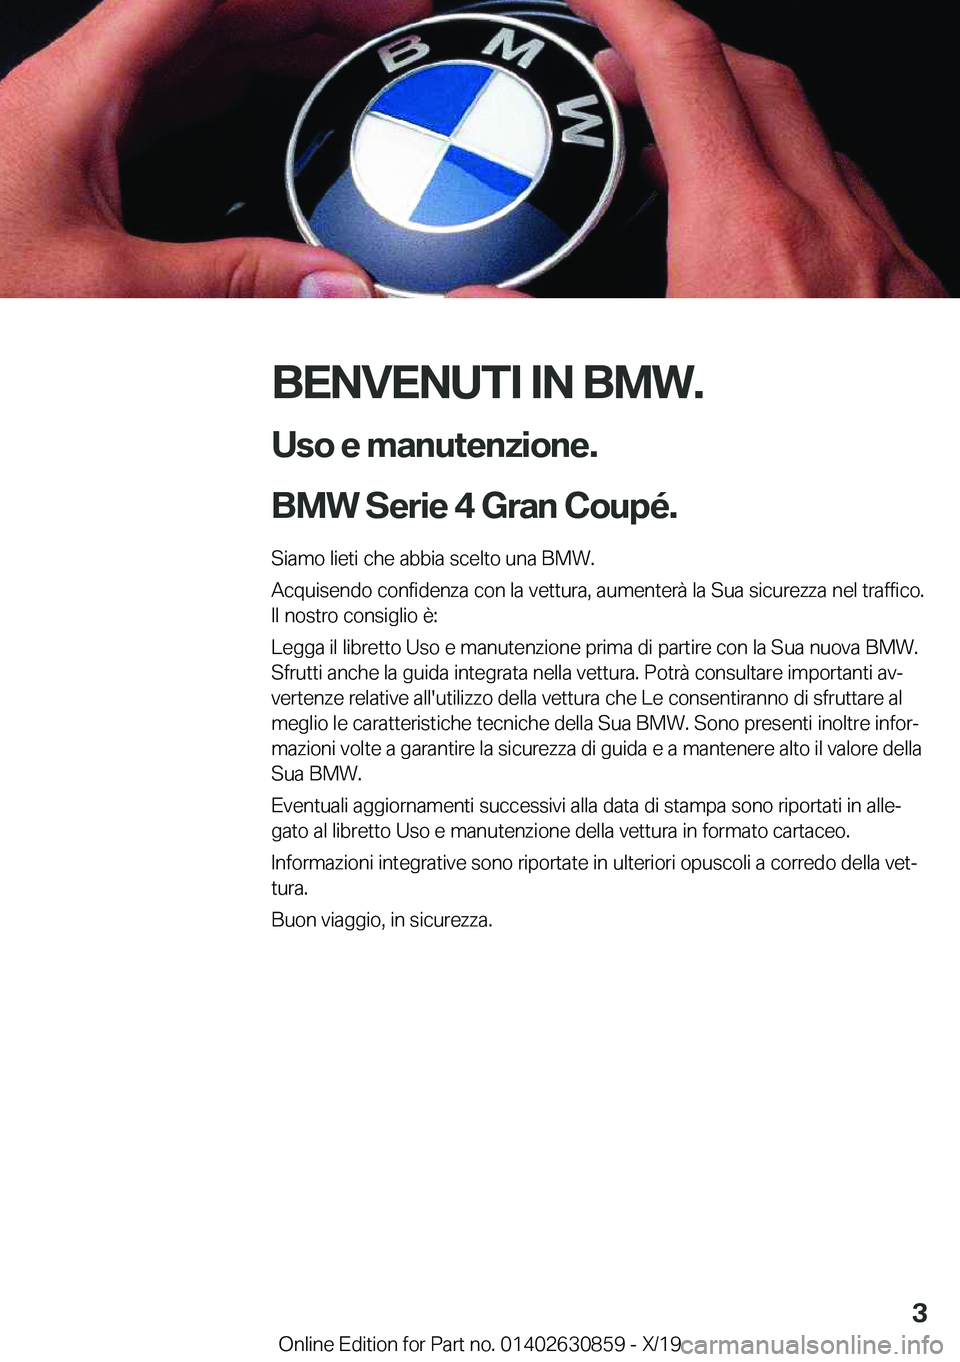 BMW 4 SERIES GRAN COUPE 2020  Libretti Di Uso E manutenzione (in Italian) �B�E�N�V�E�N�U�T�I��I�N��B�M�W�.�U�s�o��e��m�a�n�u�t�e�n�z�i�o�n�e�.
�B�M�W��S�e�r�i�e��4��G�r�a�n��C�o�u�p�é�.�
�S�i�a�m�o��l�i�e�t�i��c�h�e��a�b�b�i�a��s�c�e�l�t�o��u�n�a��B�M�W�.
�A